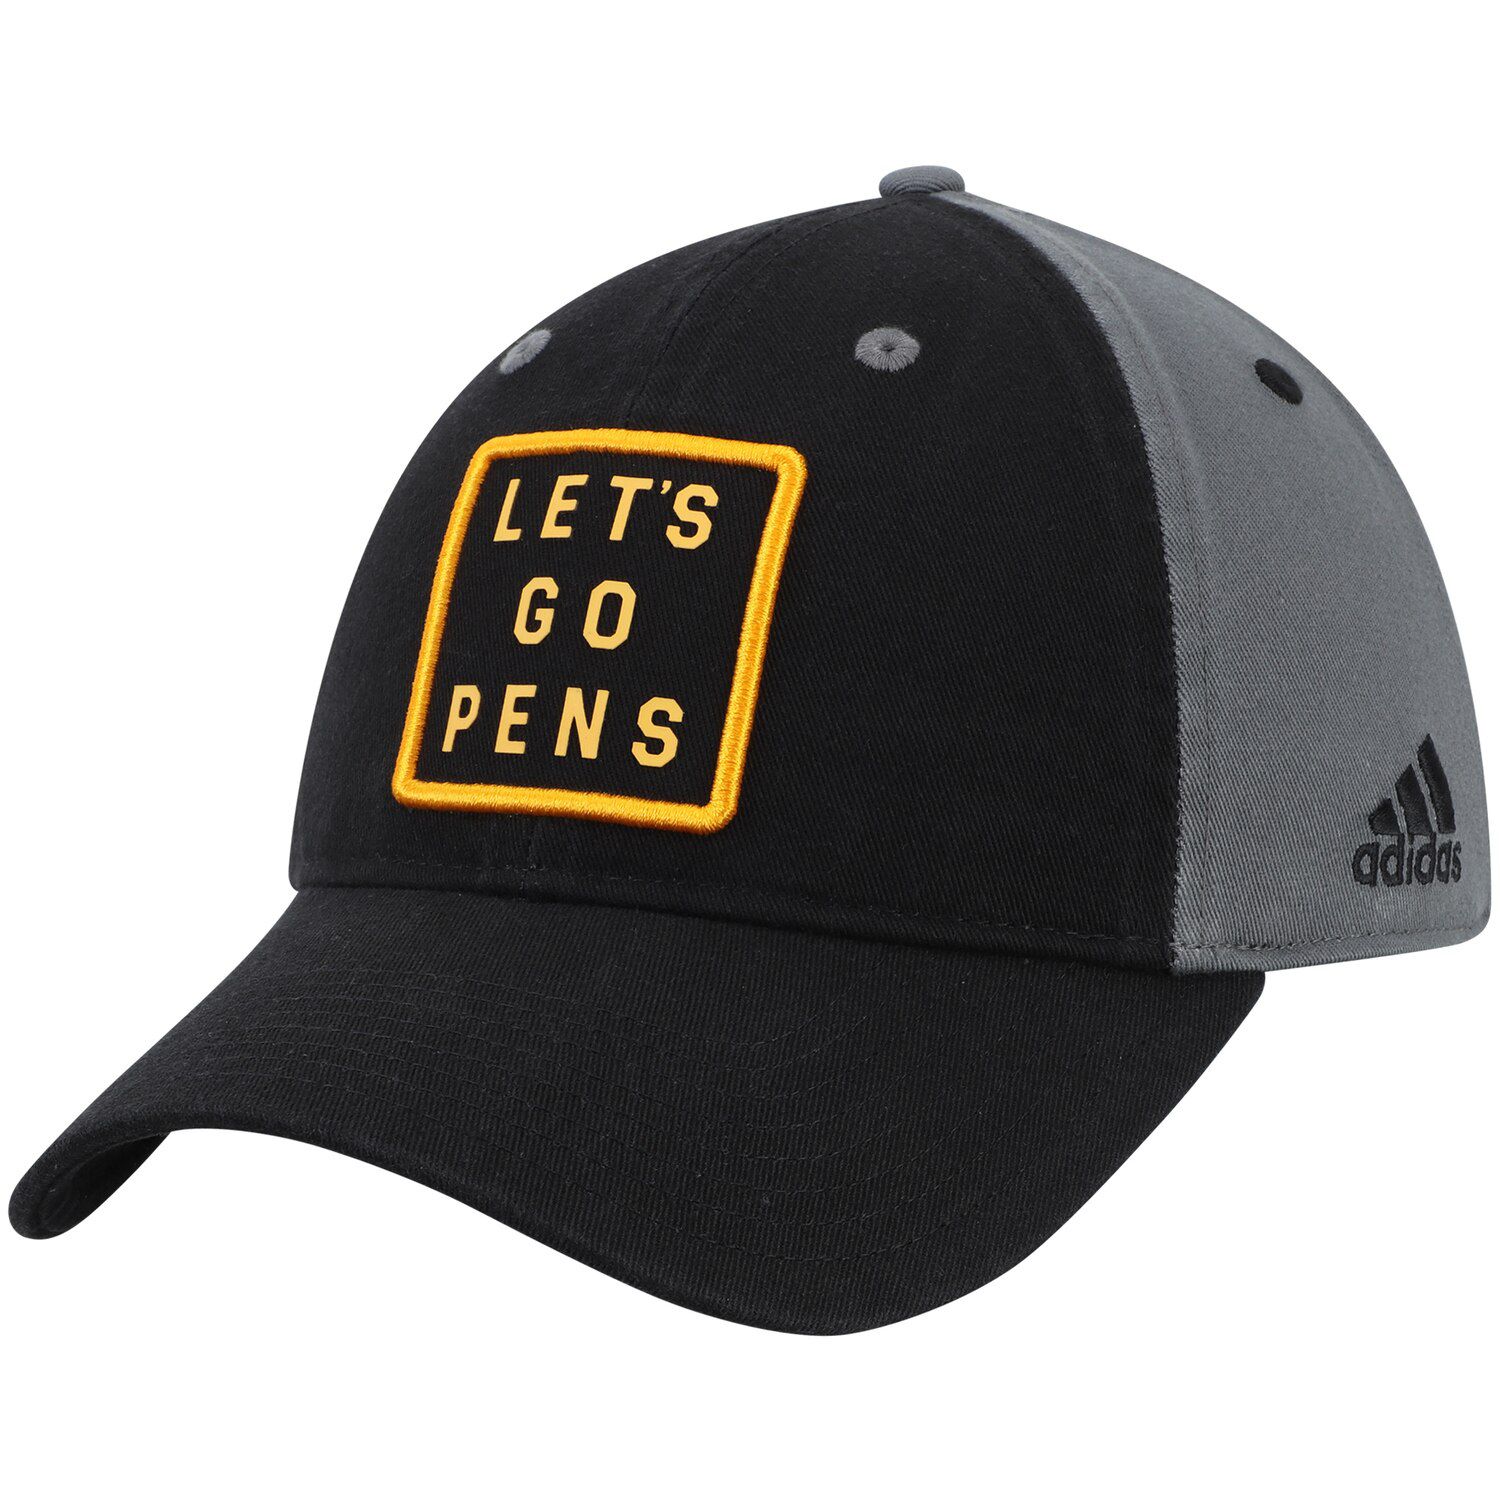 pens hat